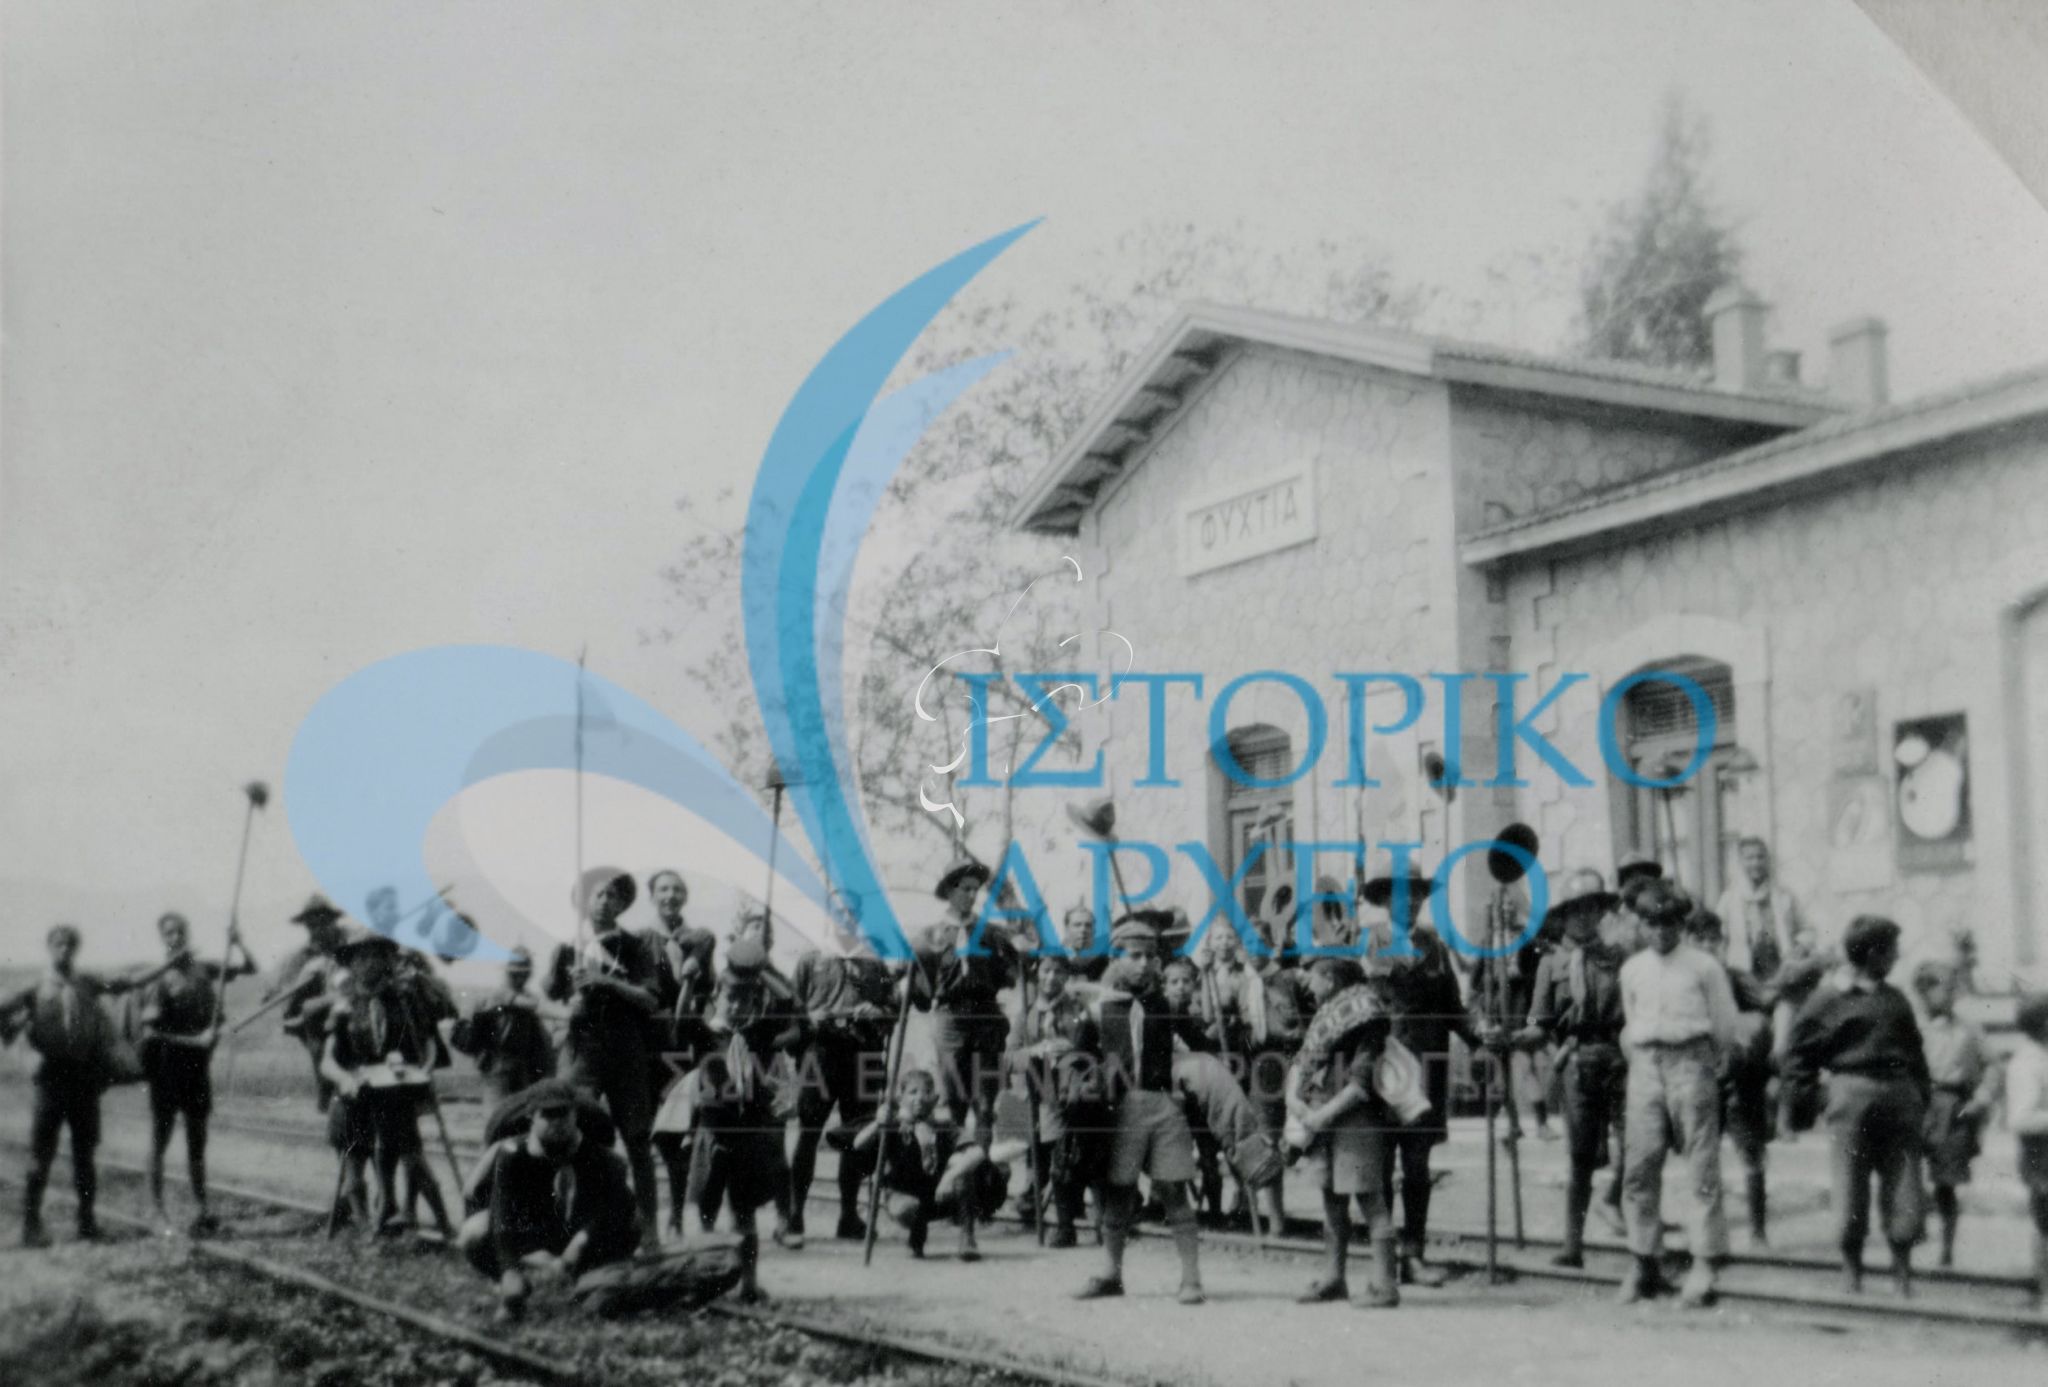 Η 6η Αγέλη Αθηνών εξω από το Σιδηροδρομικό Σταθμό Φιχτιά Αργολιδάς μετά την εκδρομή της στο Ναύπλιο το 1938.